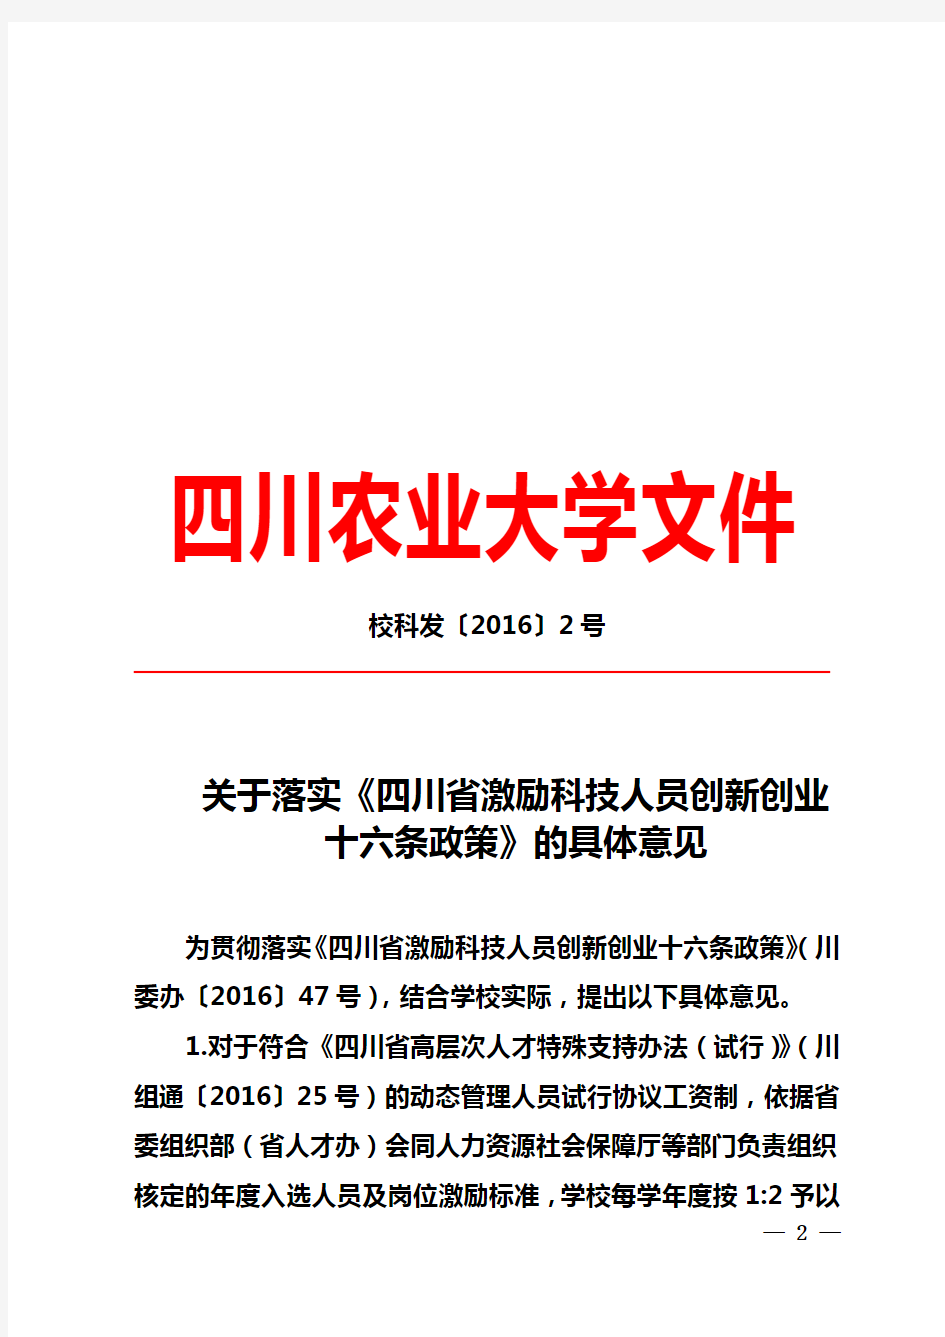 关于落实《四川省激励科技人员创新创业十六条政策》的具体意见